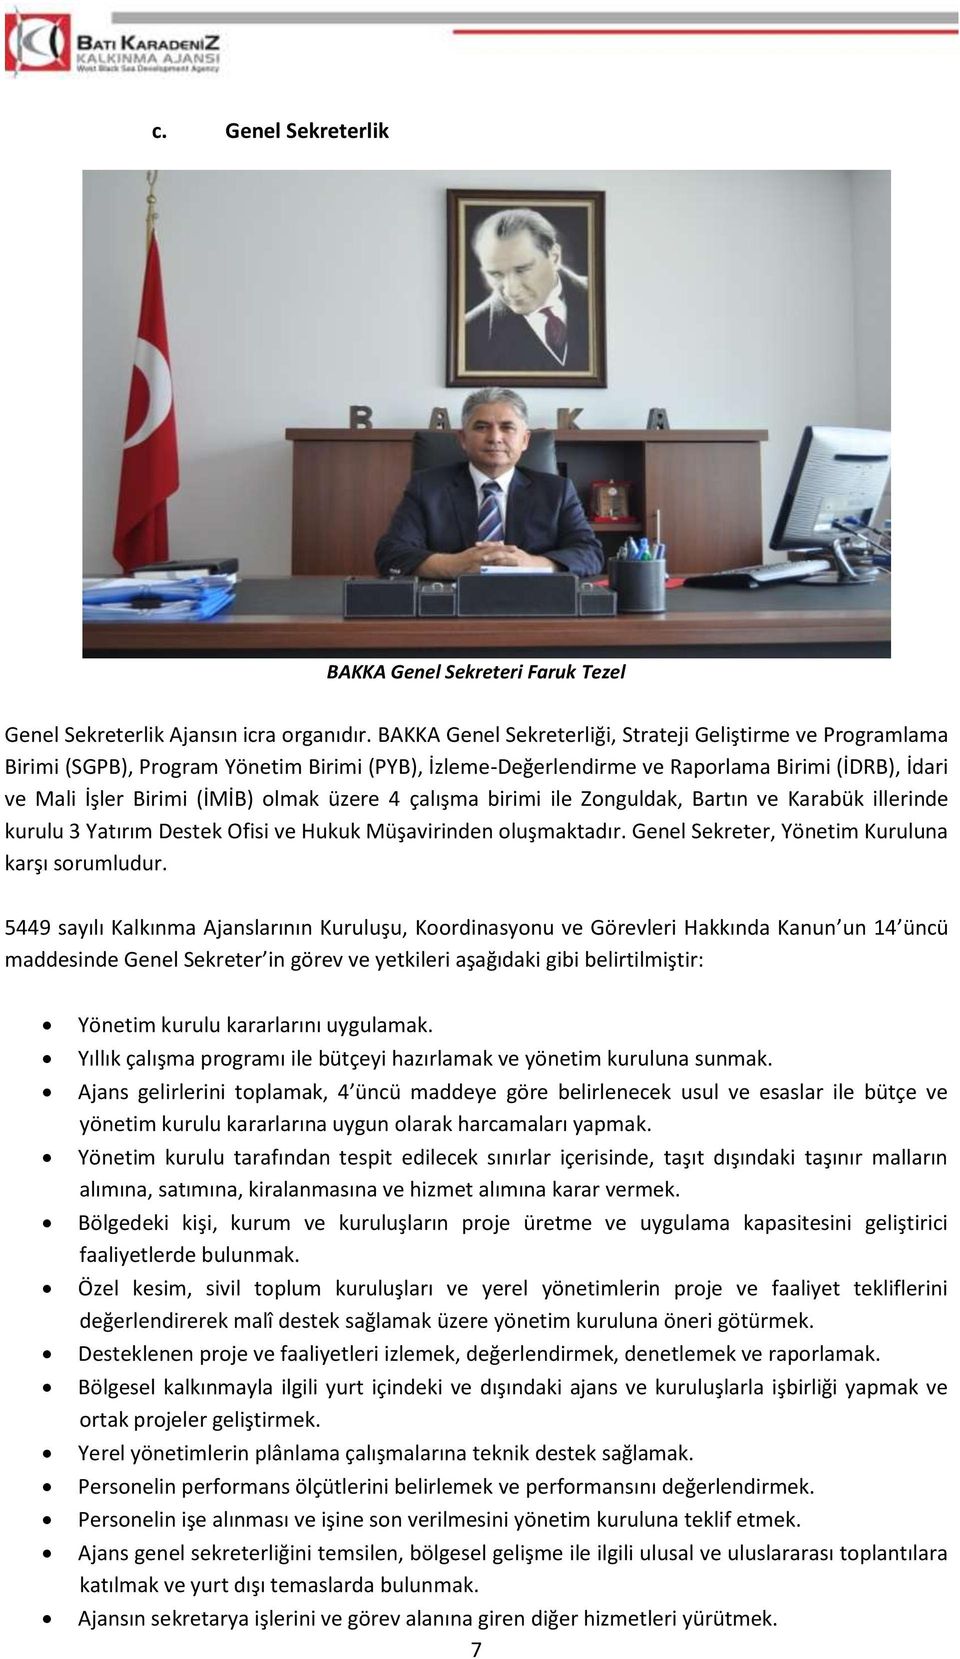 üzere 4 çalışma birimi ile Zonguldak, Bartın ve Karabük illerinde kurulu 3 Yatırım Destek Ofisi ve Hukuk Müşavirinden oluşmaktadır. Genel Sekreter, Yönetim Kuruluna karşı sorumludur.